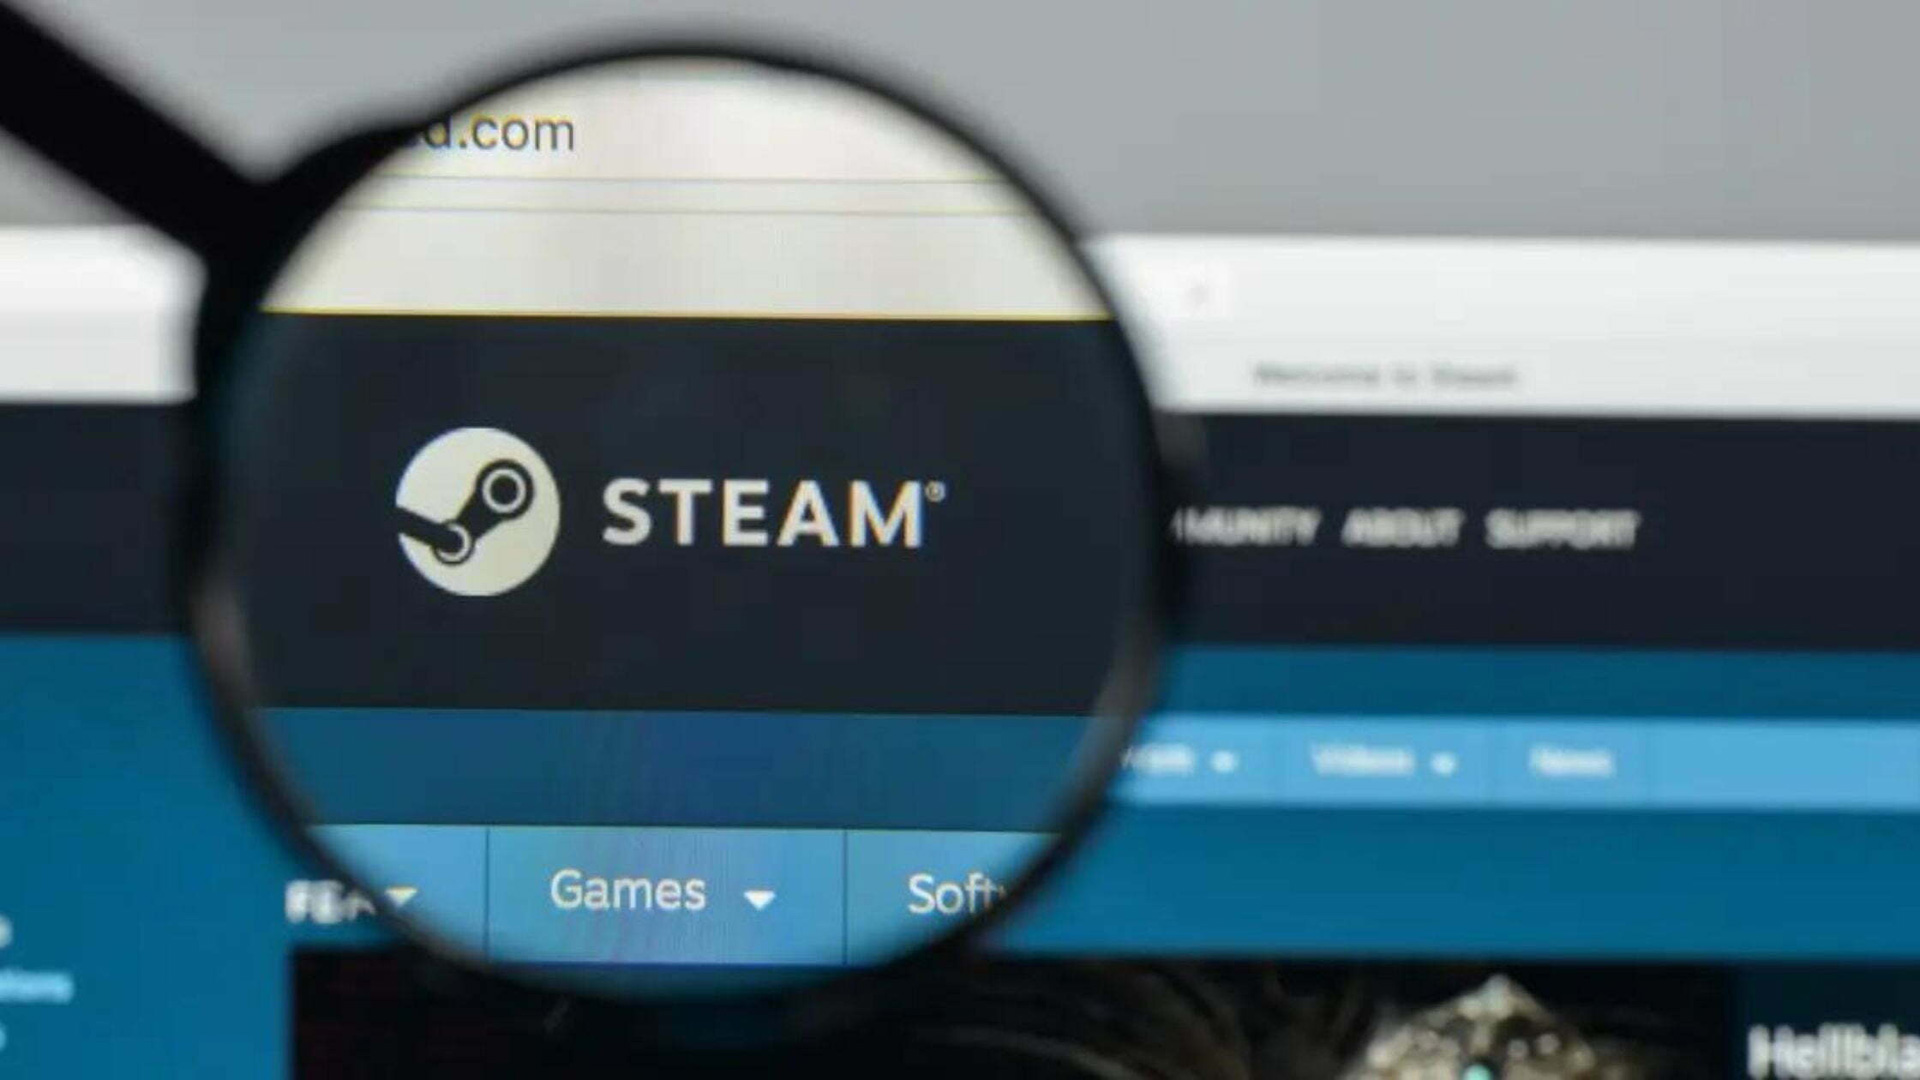 Jak zmienić nazwę użytkownika Steam?